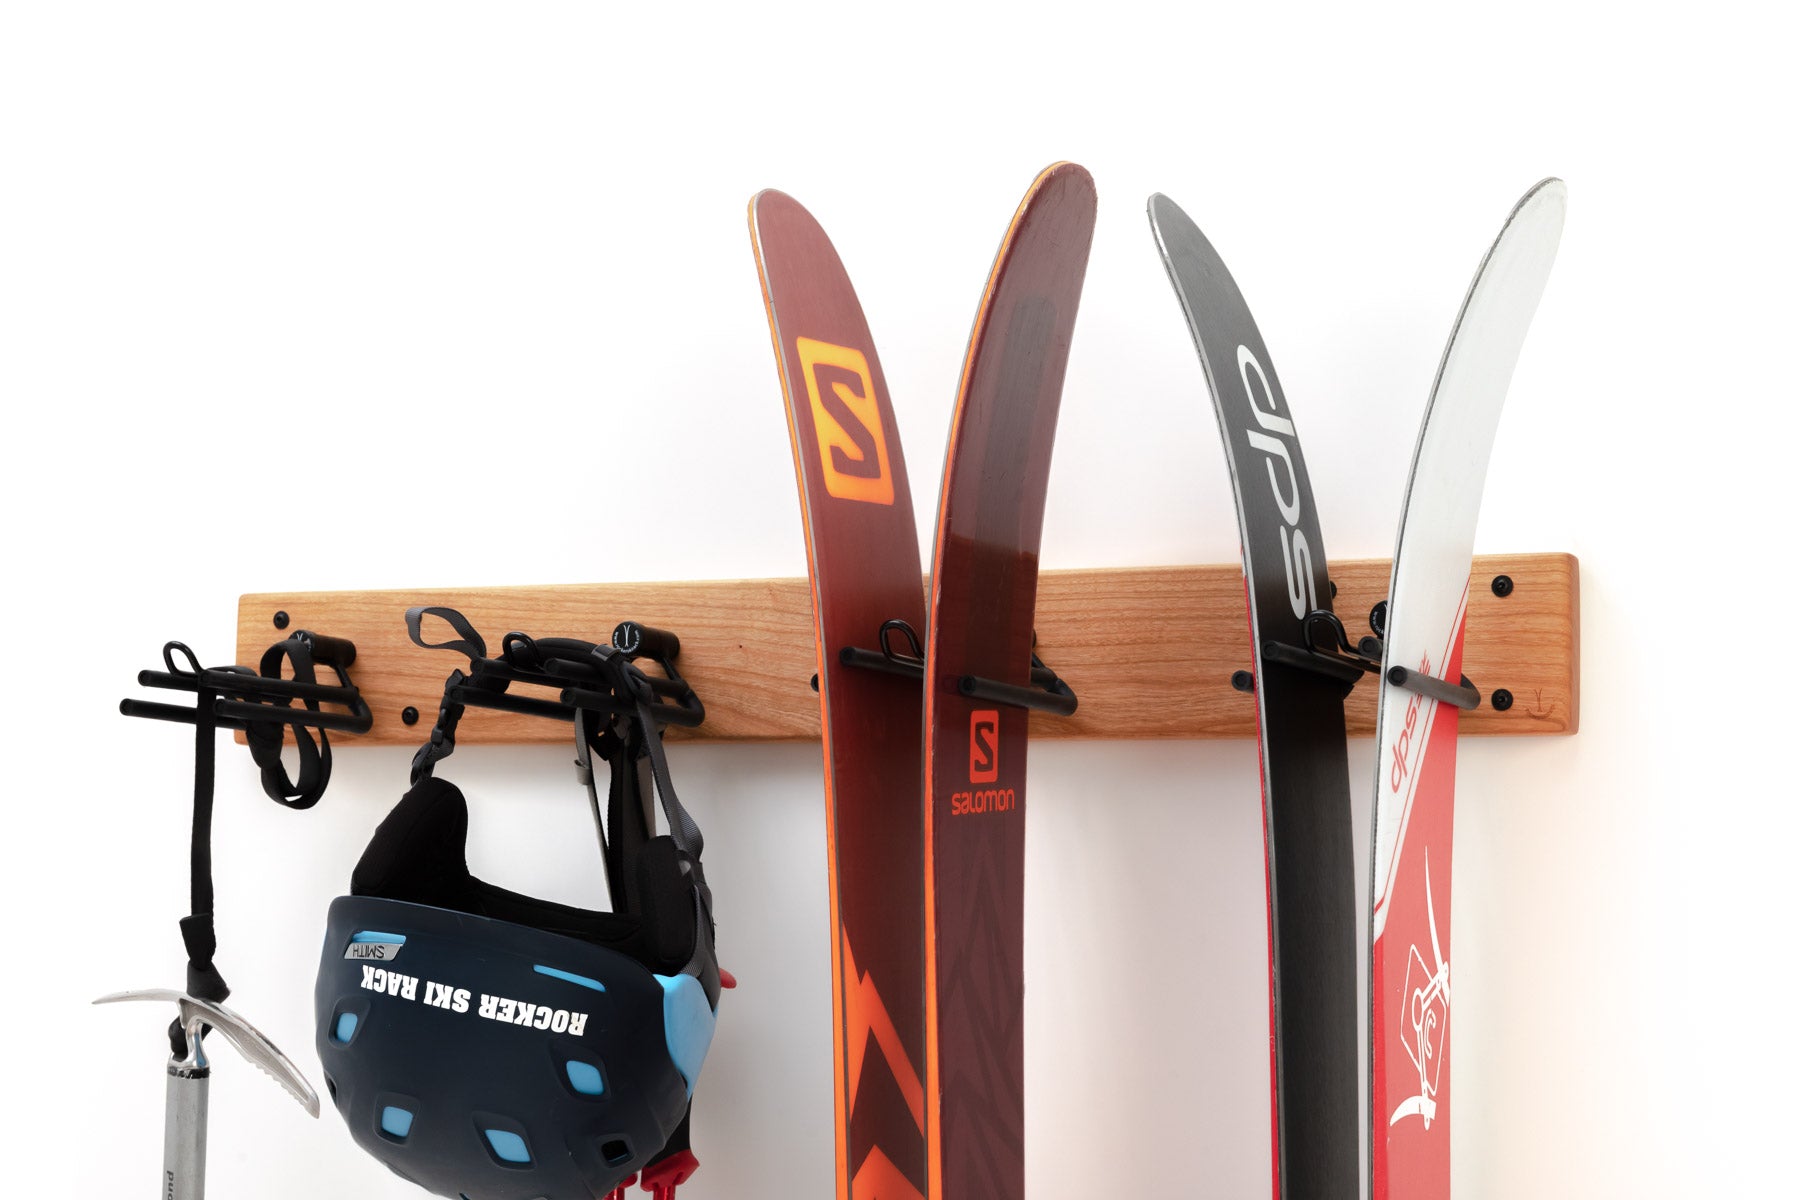 The Best Skis Racks of 2023 - Ski Rack Reviews